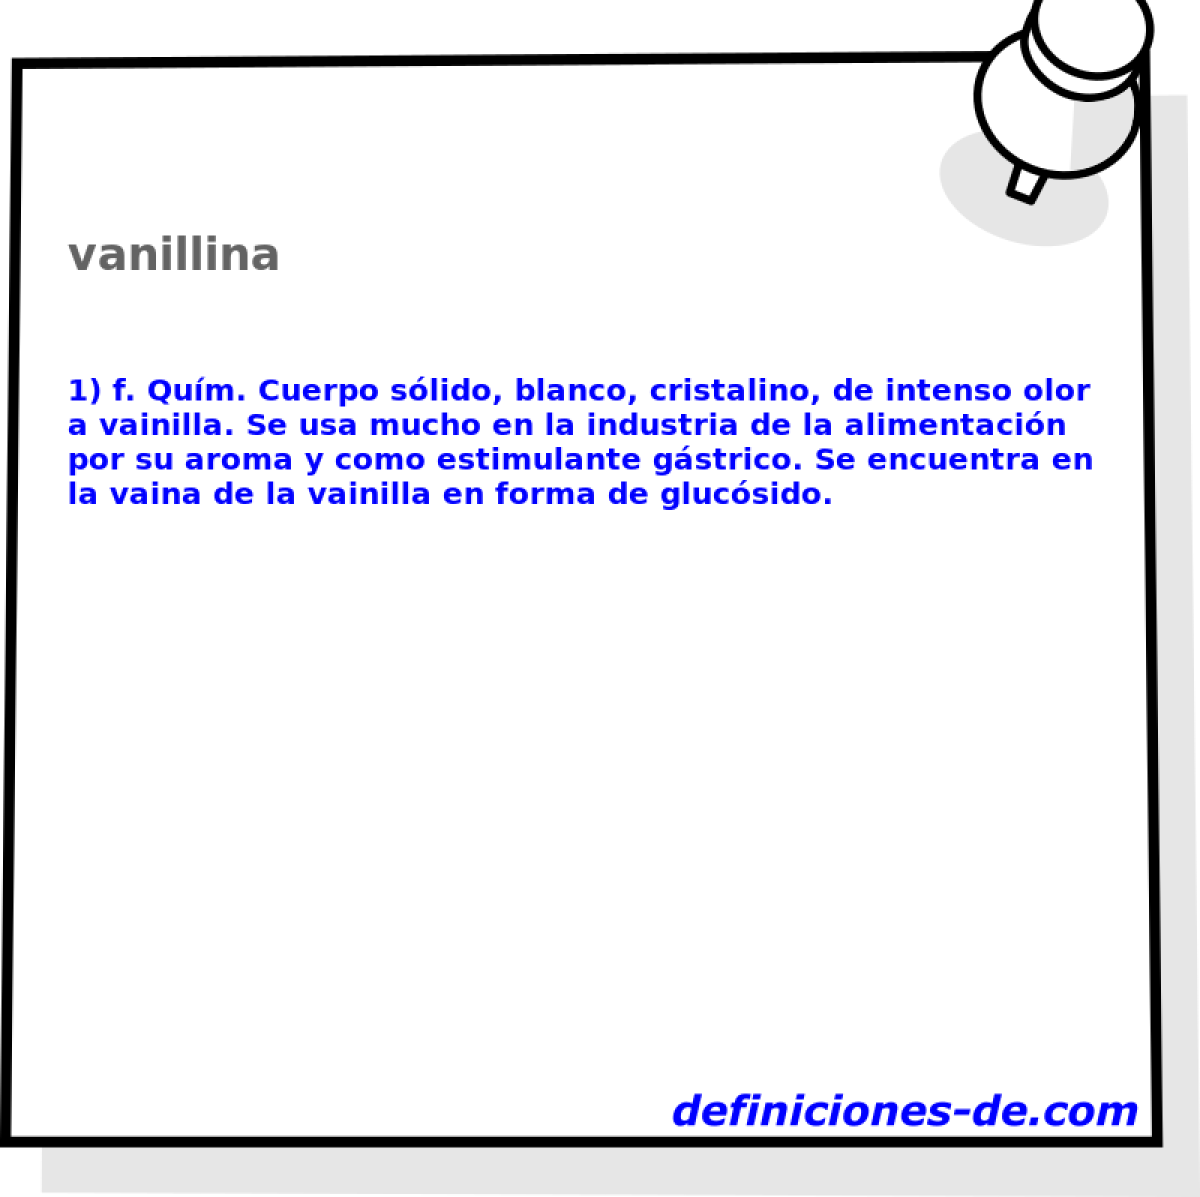 vanillina 